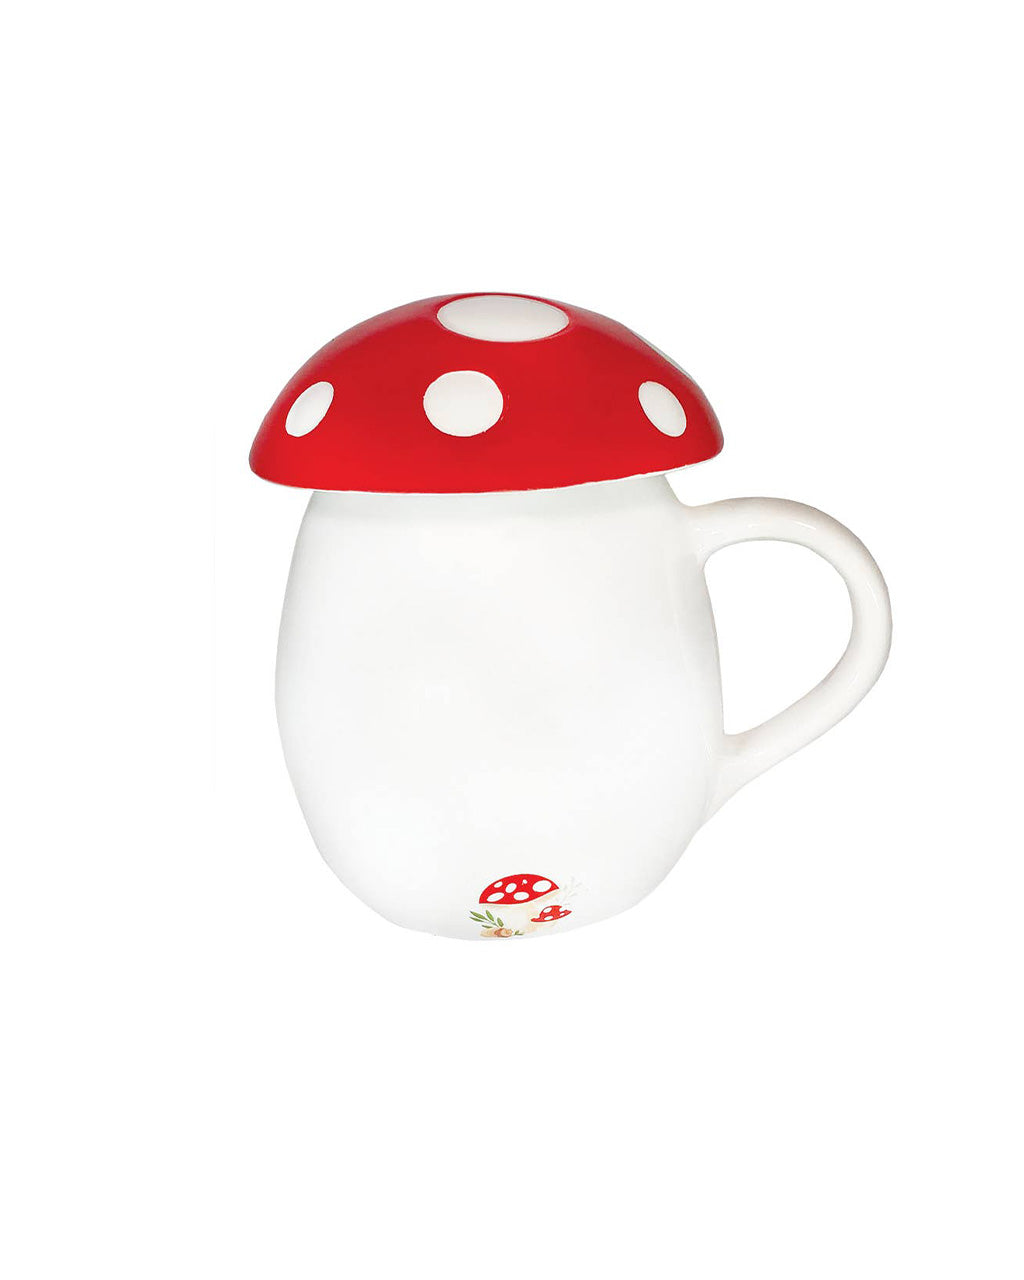 Mushroom Mug With Lid